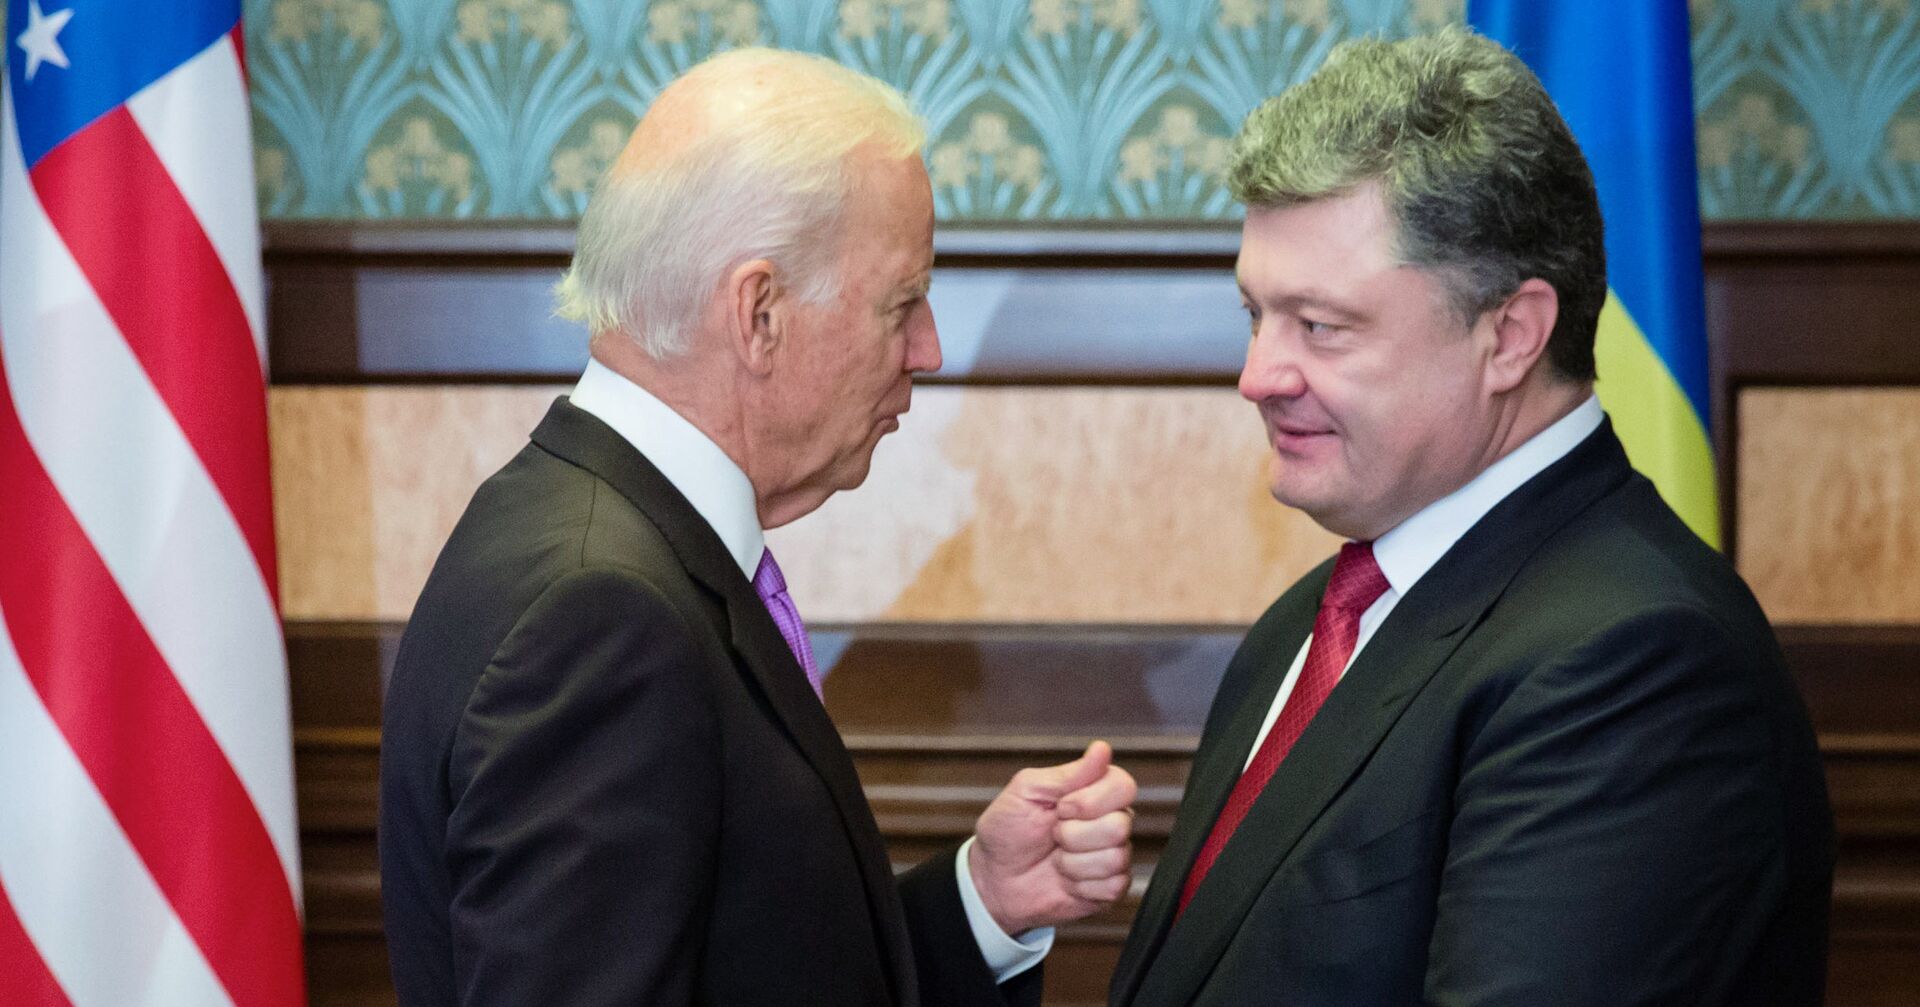 Вице-президент США Джо Байден и президент Украины Петр Порошенко во время встречи в Киеве - ИноСМИ, 1920, 15.01.2021